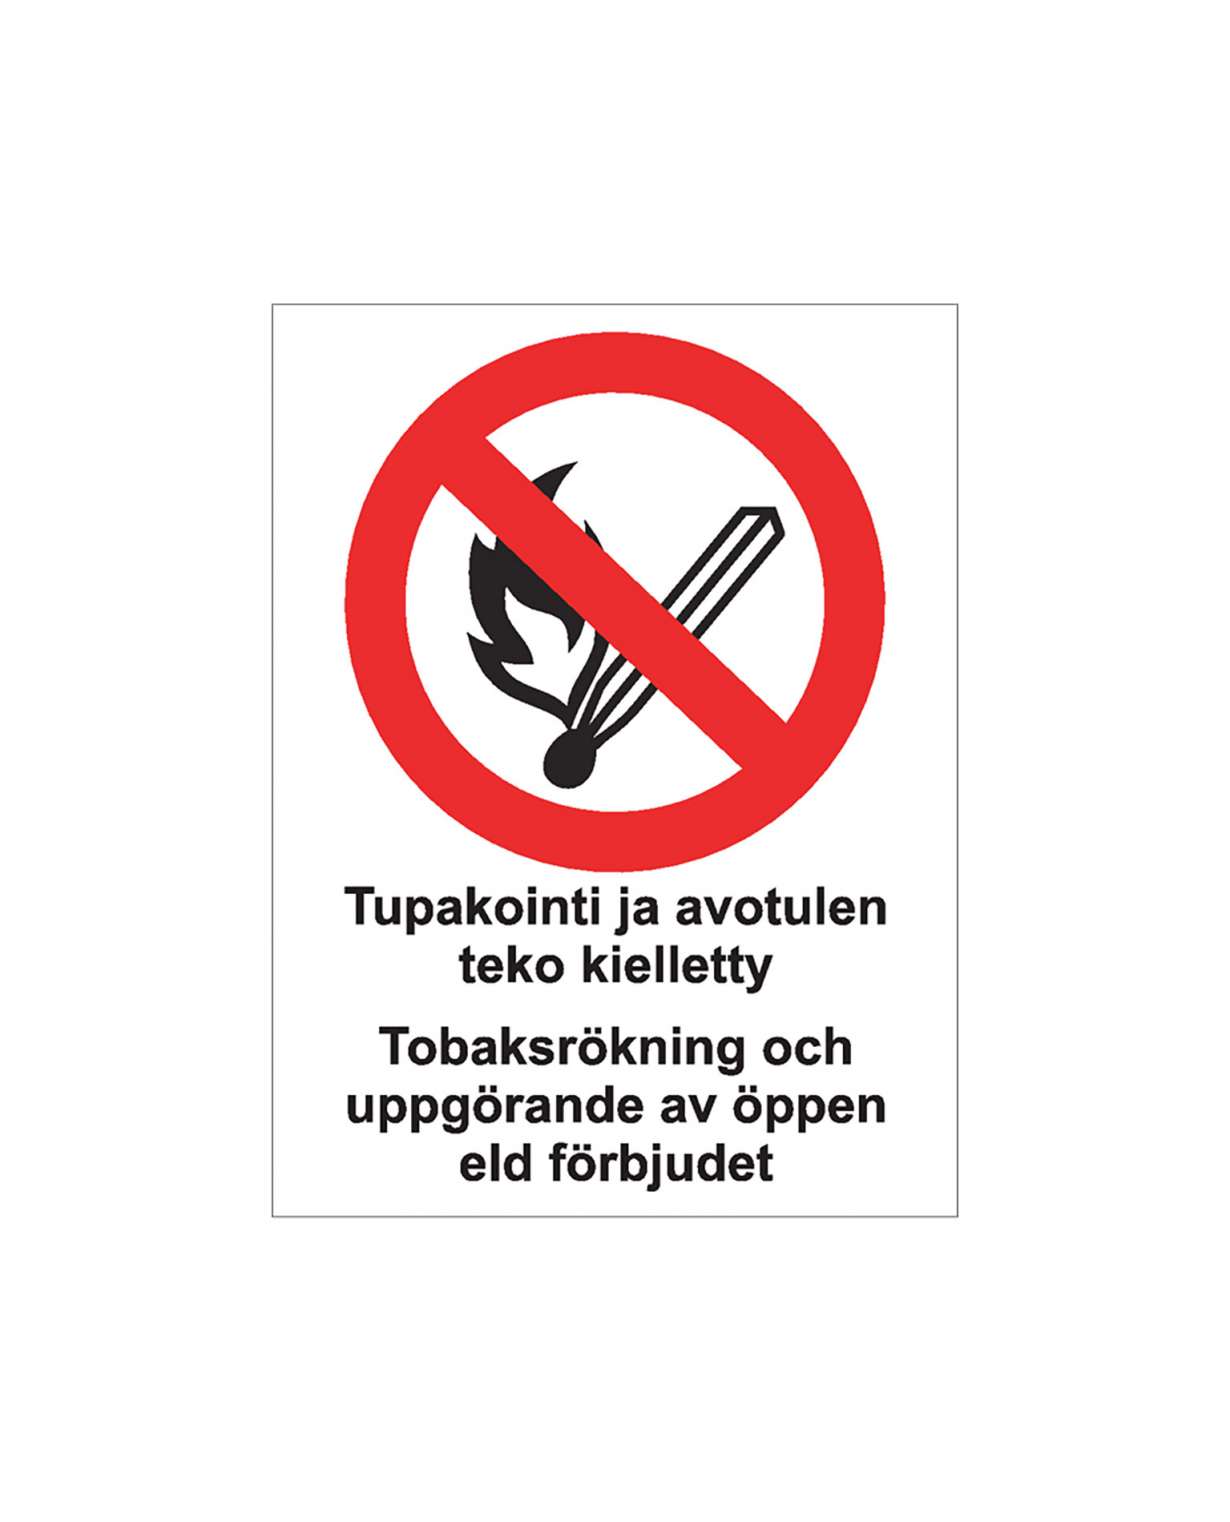 Tupakointi ja avotulen teko kielletty ruotsi, Magneetti, 200x300 mm